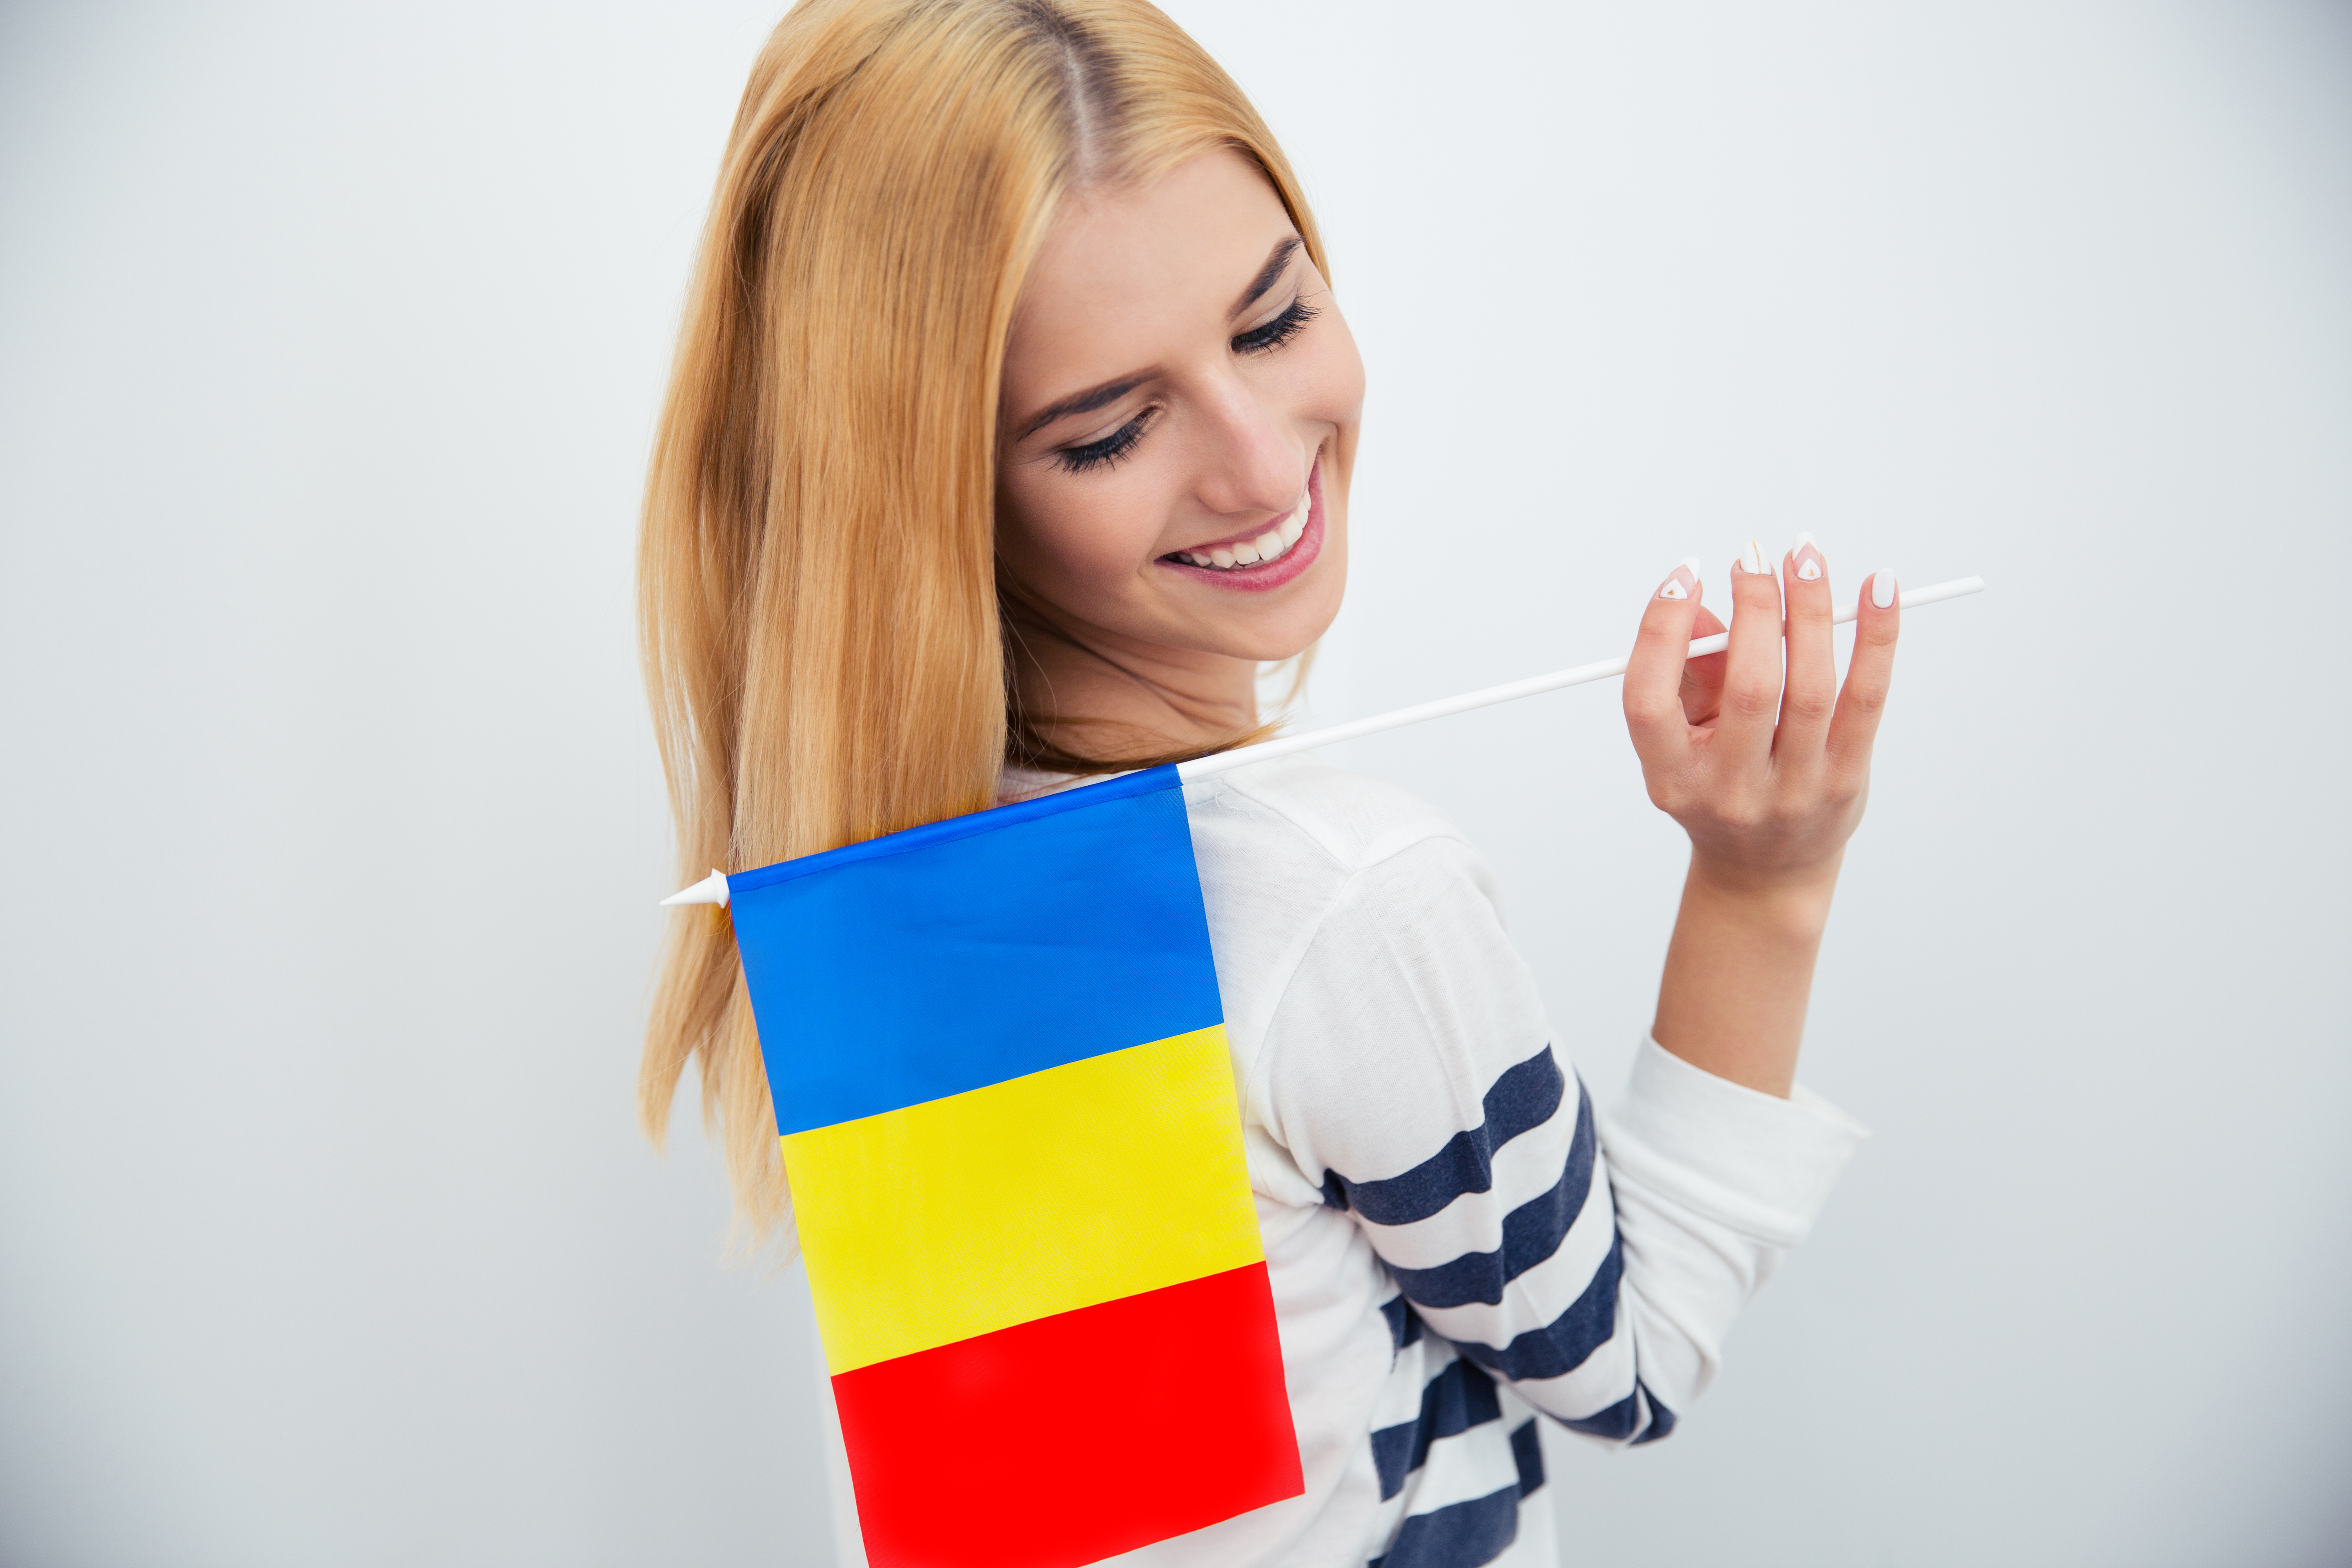 Студенческая виза в Румынию: как получить в 2022 году, документы, сроки, цена, продление отказ